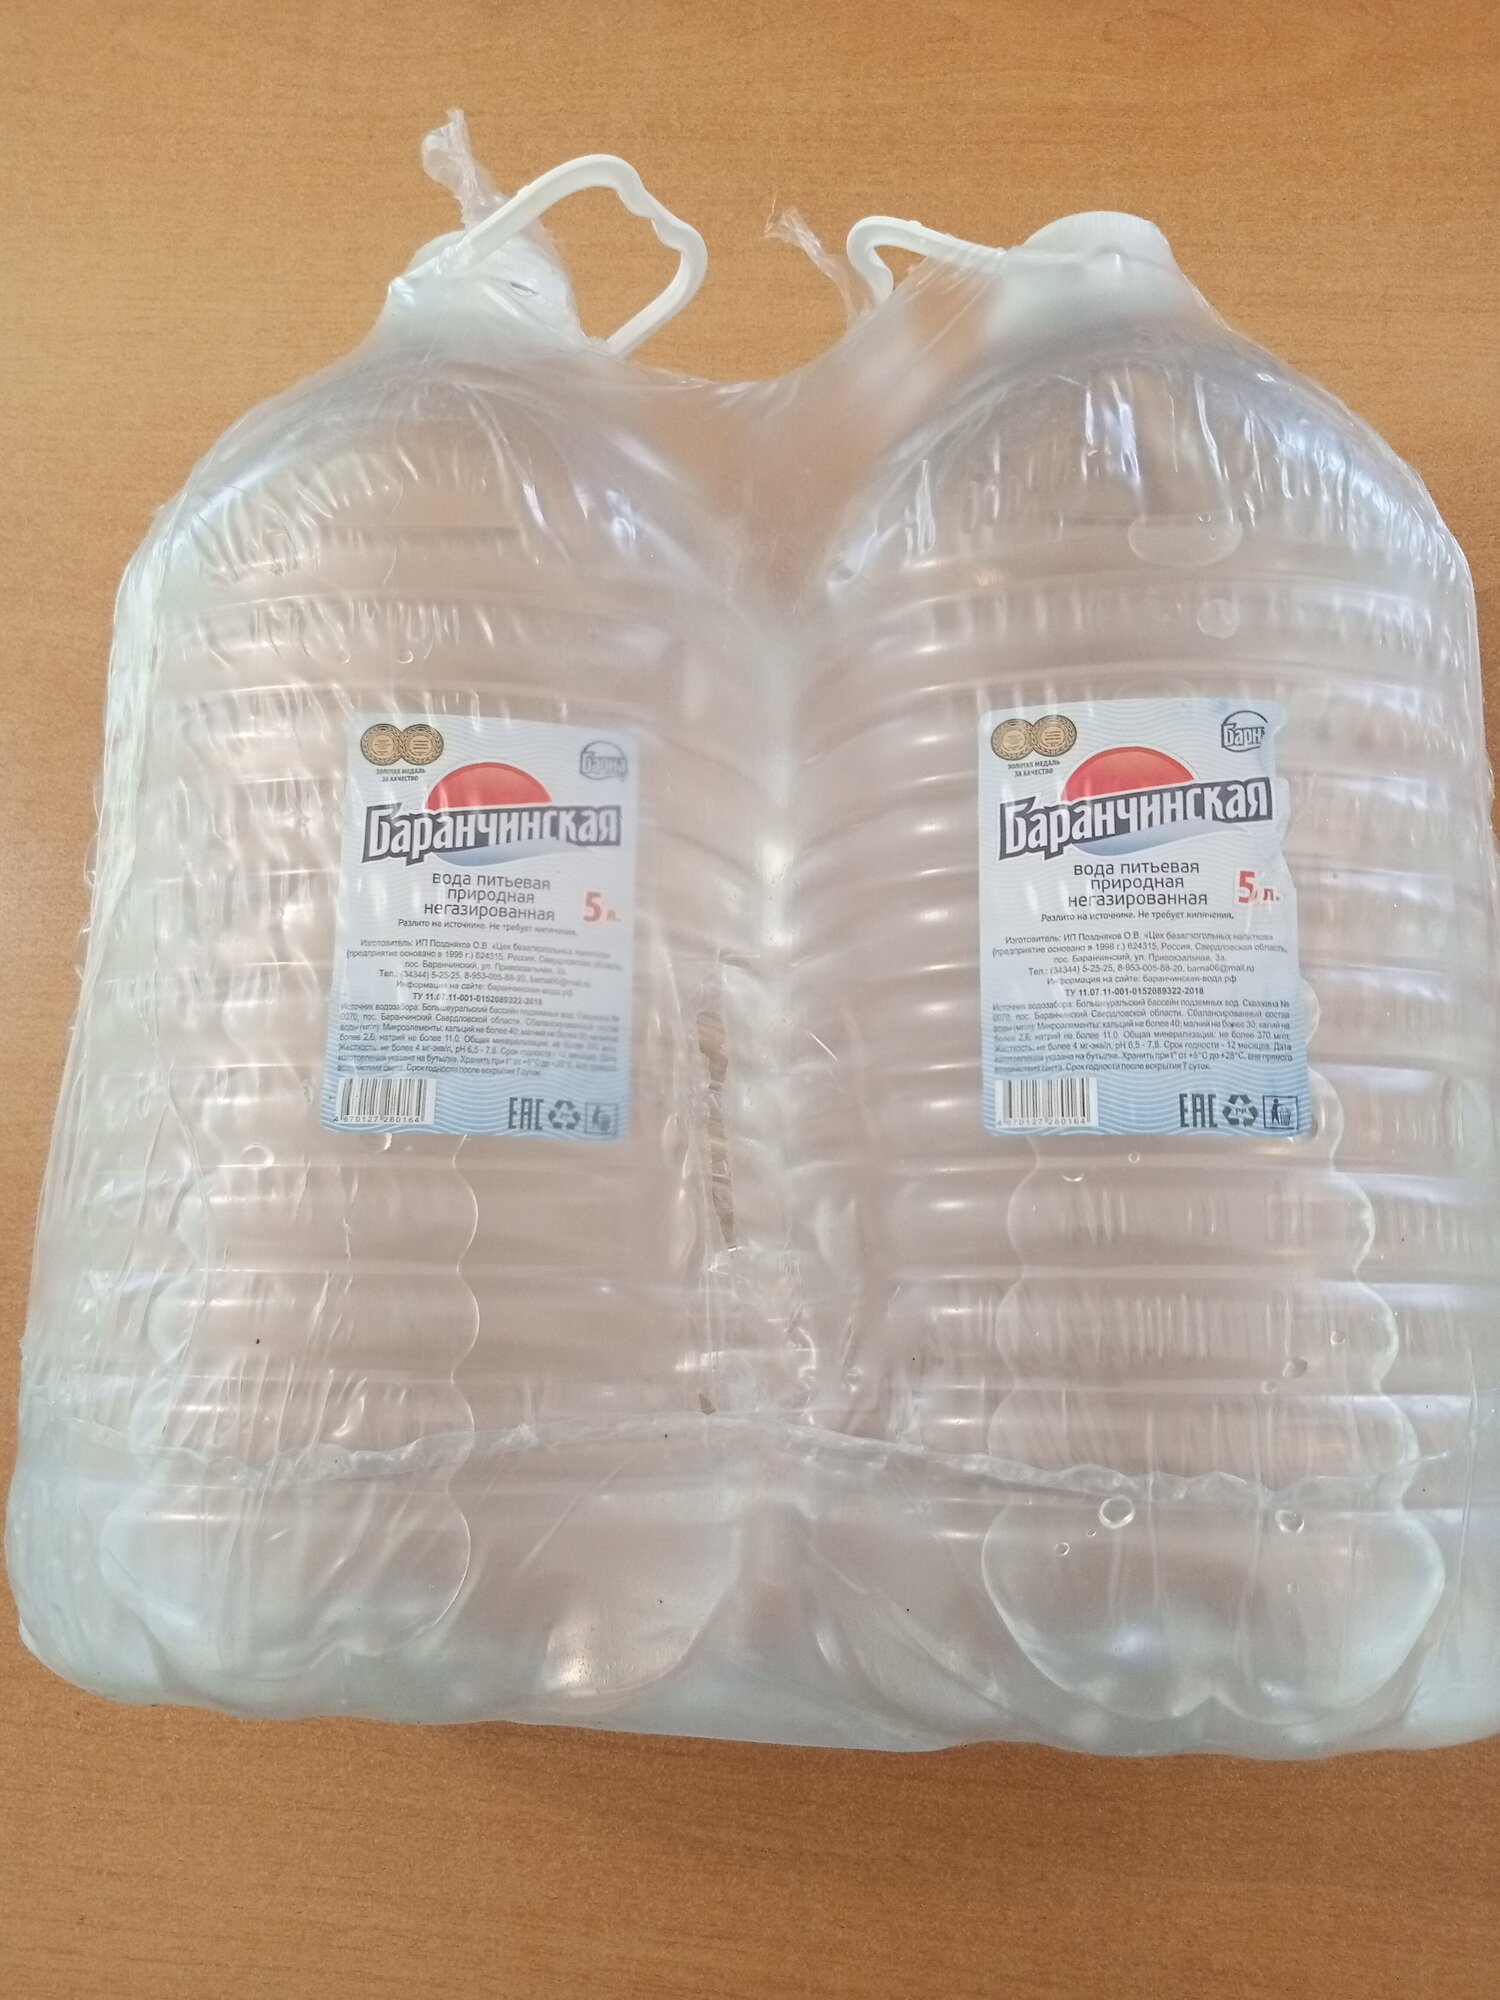 Вода питьевая "Баранчинская" 5,0 лит. 2 штуки (заказ 1 упаковка) - фотография № 1